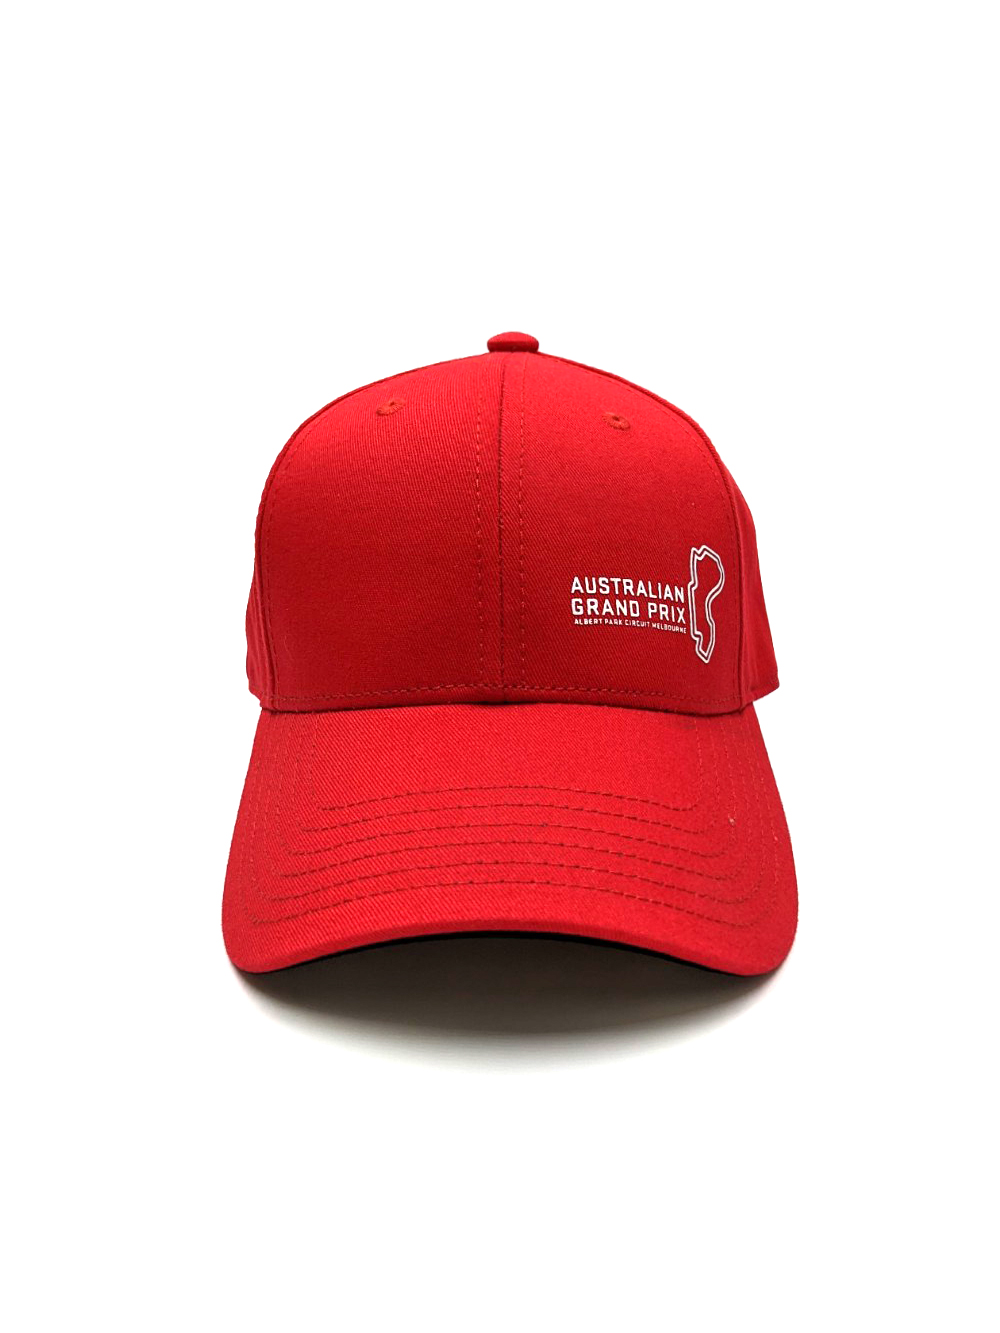 2023 AUSTRALIAN GRAND PRIX RED CAP